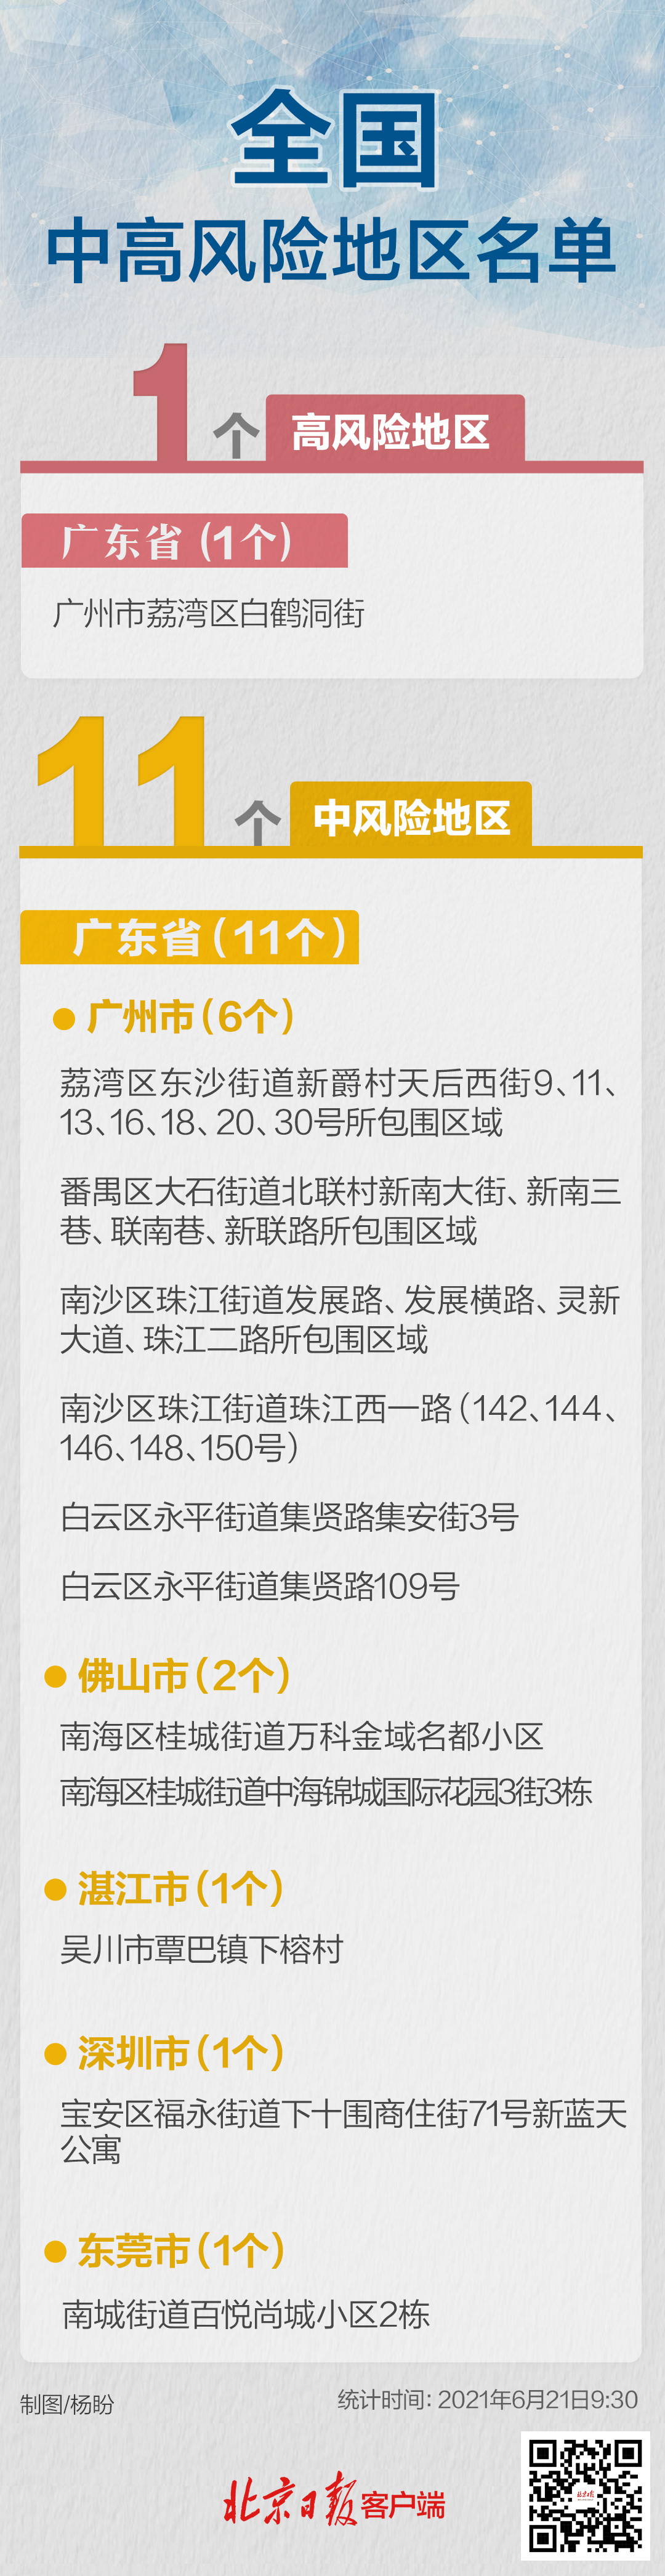 广东昨日新增2例本土确诊病例最新消息 全国高中风险区名单汇总